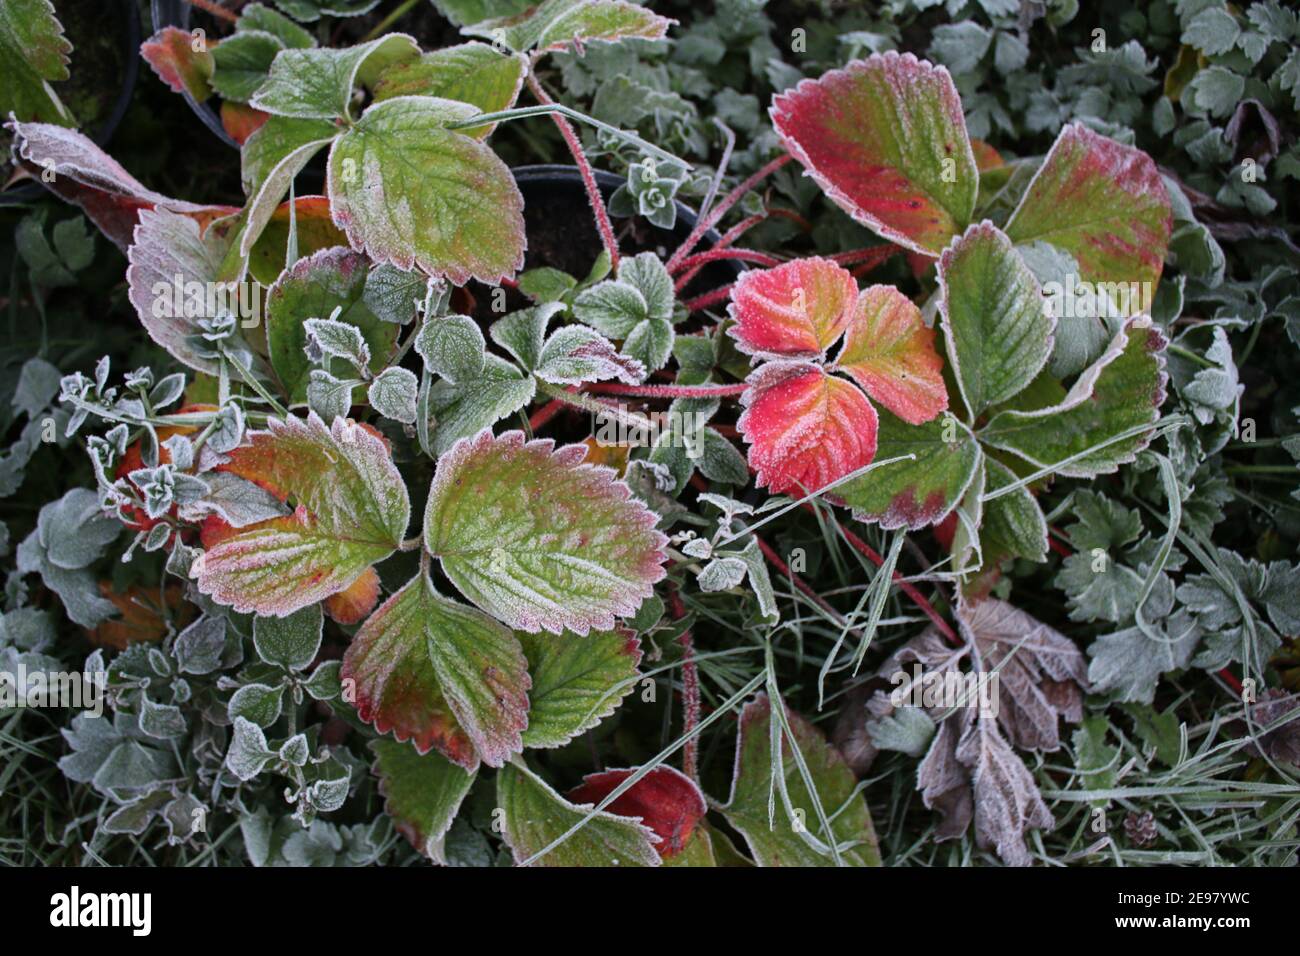 Nahaufnahme von frostbedeckten Erdbeeren Herbstblätter in der Pflanze Topf am Ende des Sommers das schöne rosa rot grün Essbare Obstpflanze wachsende Zuteilung Stockfoto